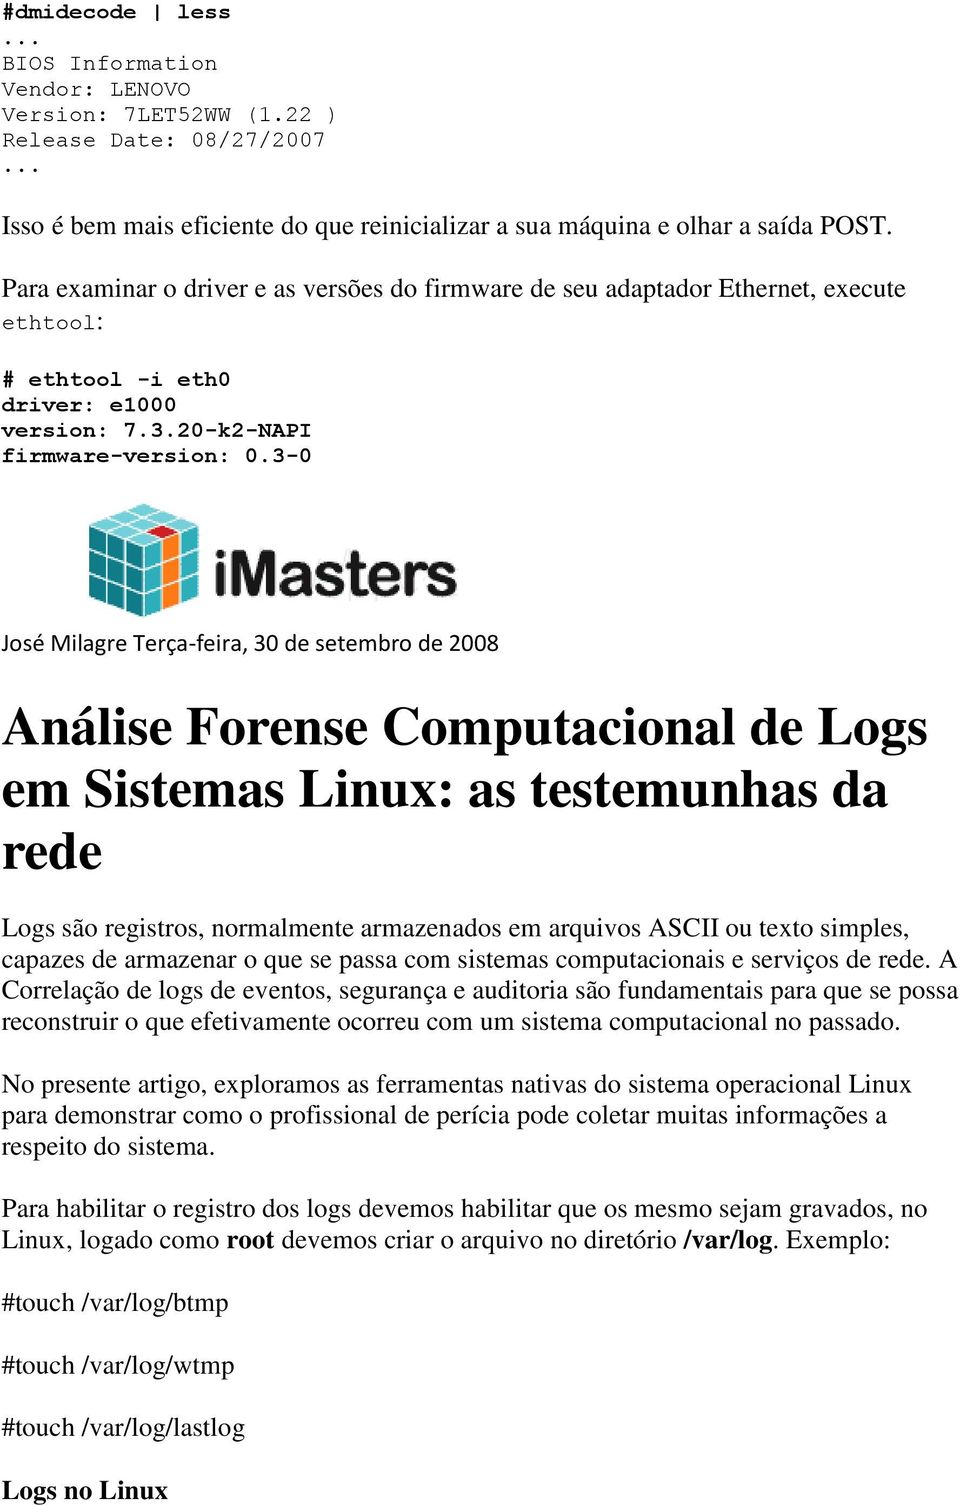 3-0 José Milagre Terça-feira, 30 de setembro de 2008 Análise Forense Computacional de Logs em Sistemas Linux: as testemunhas da rede Logs são registros, normalmente armazenados em arquivos ASCII ou